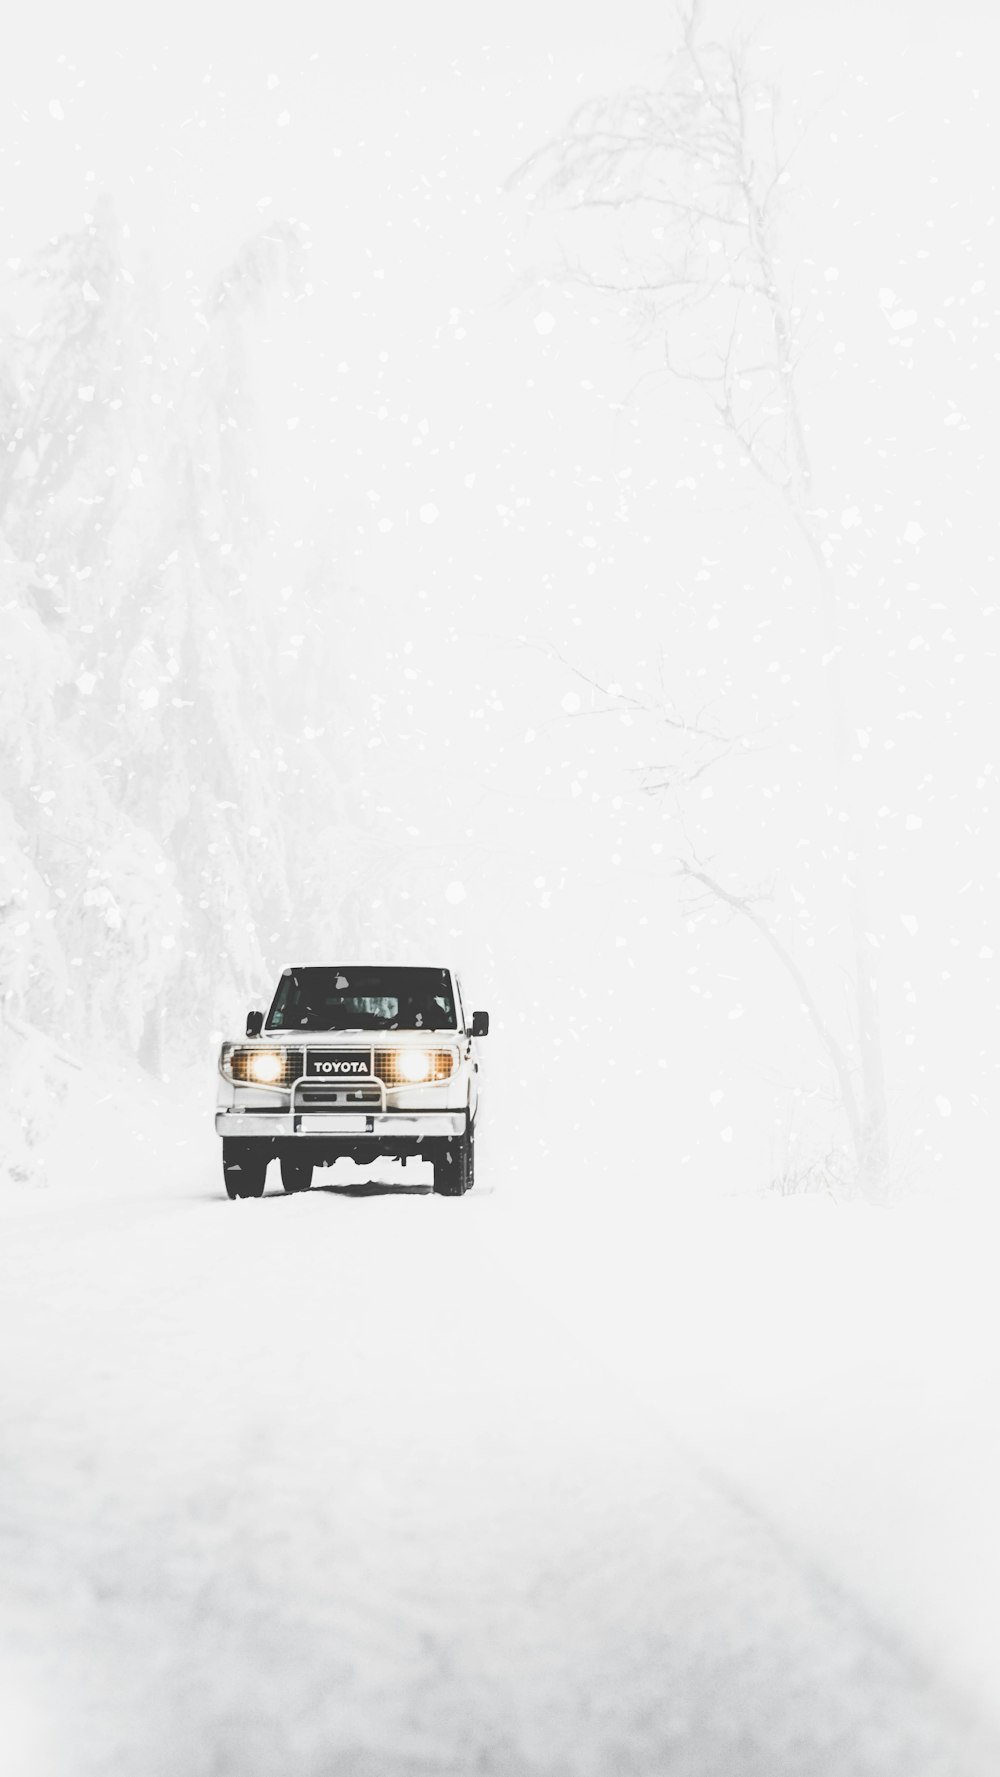 SUV Toyota cubierto de nieve